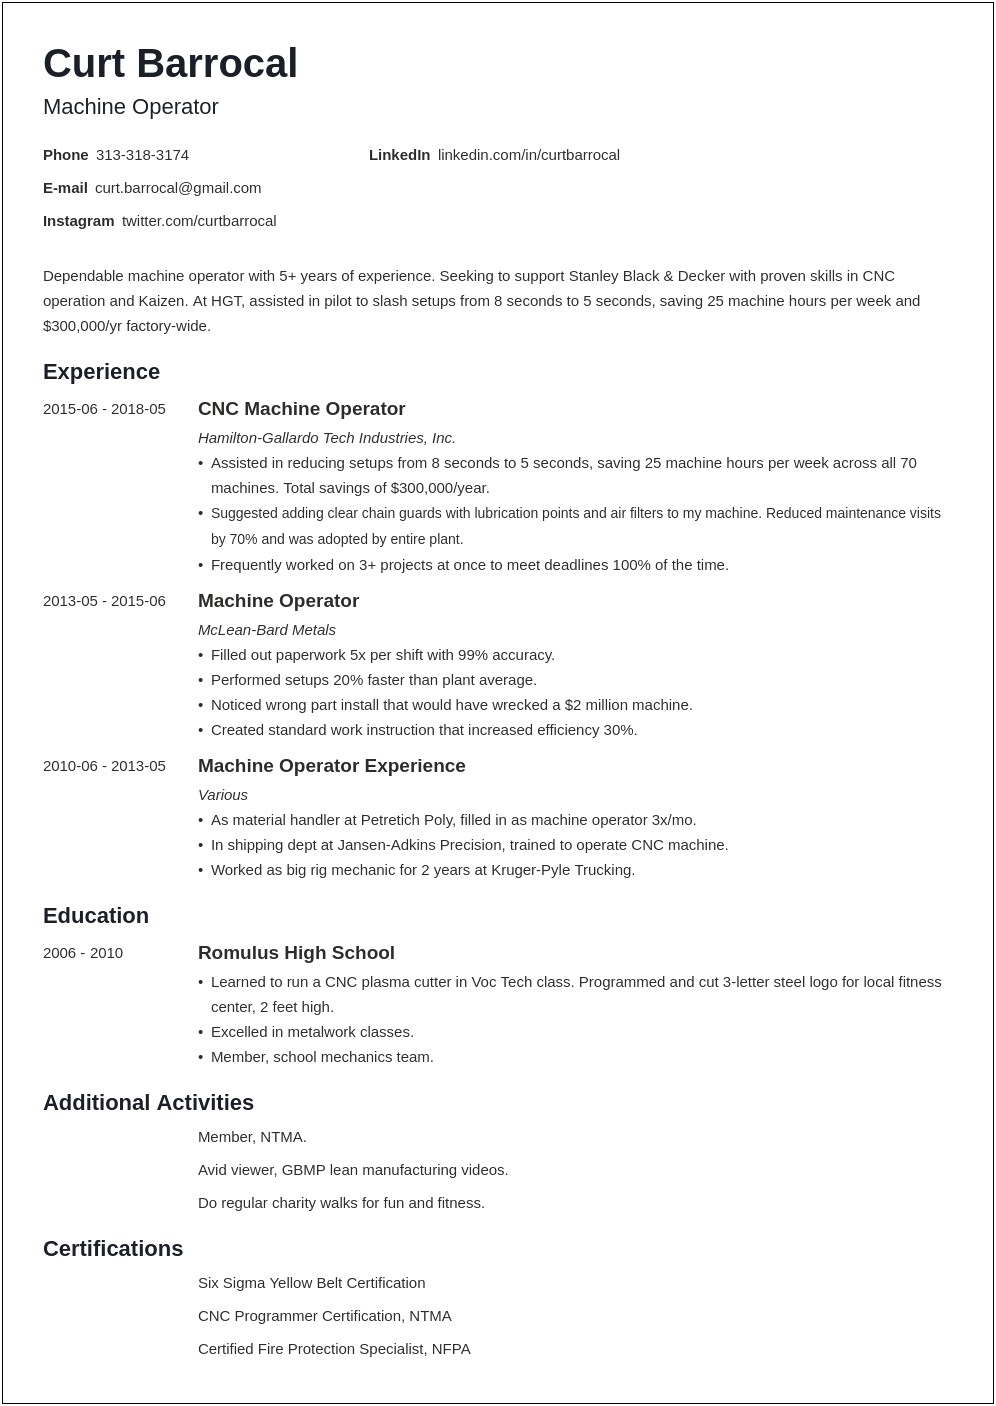 Tour Production Technician Job Description Resume